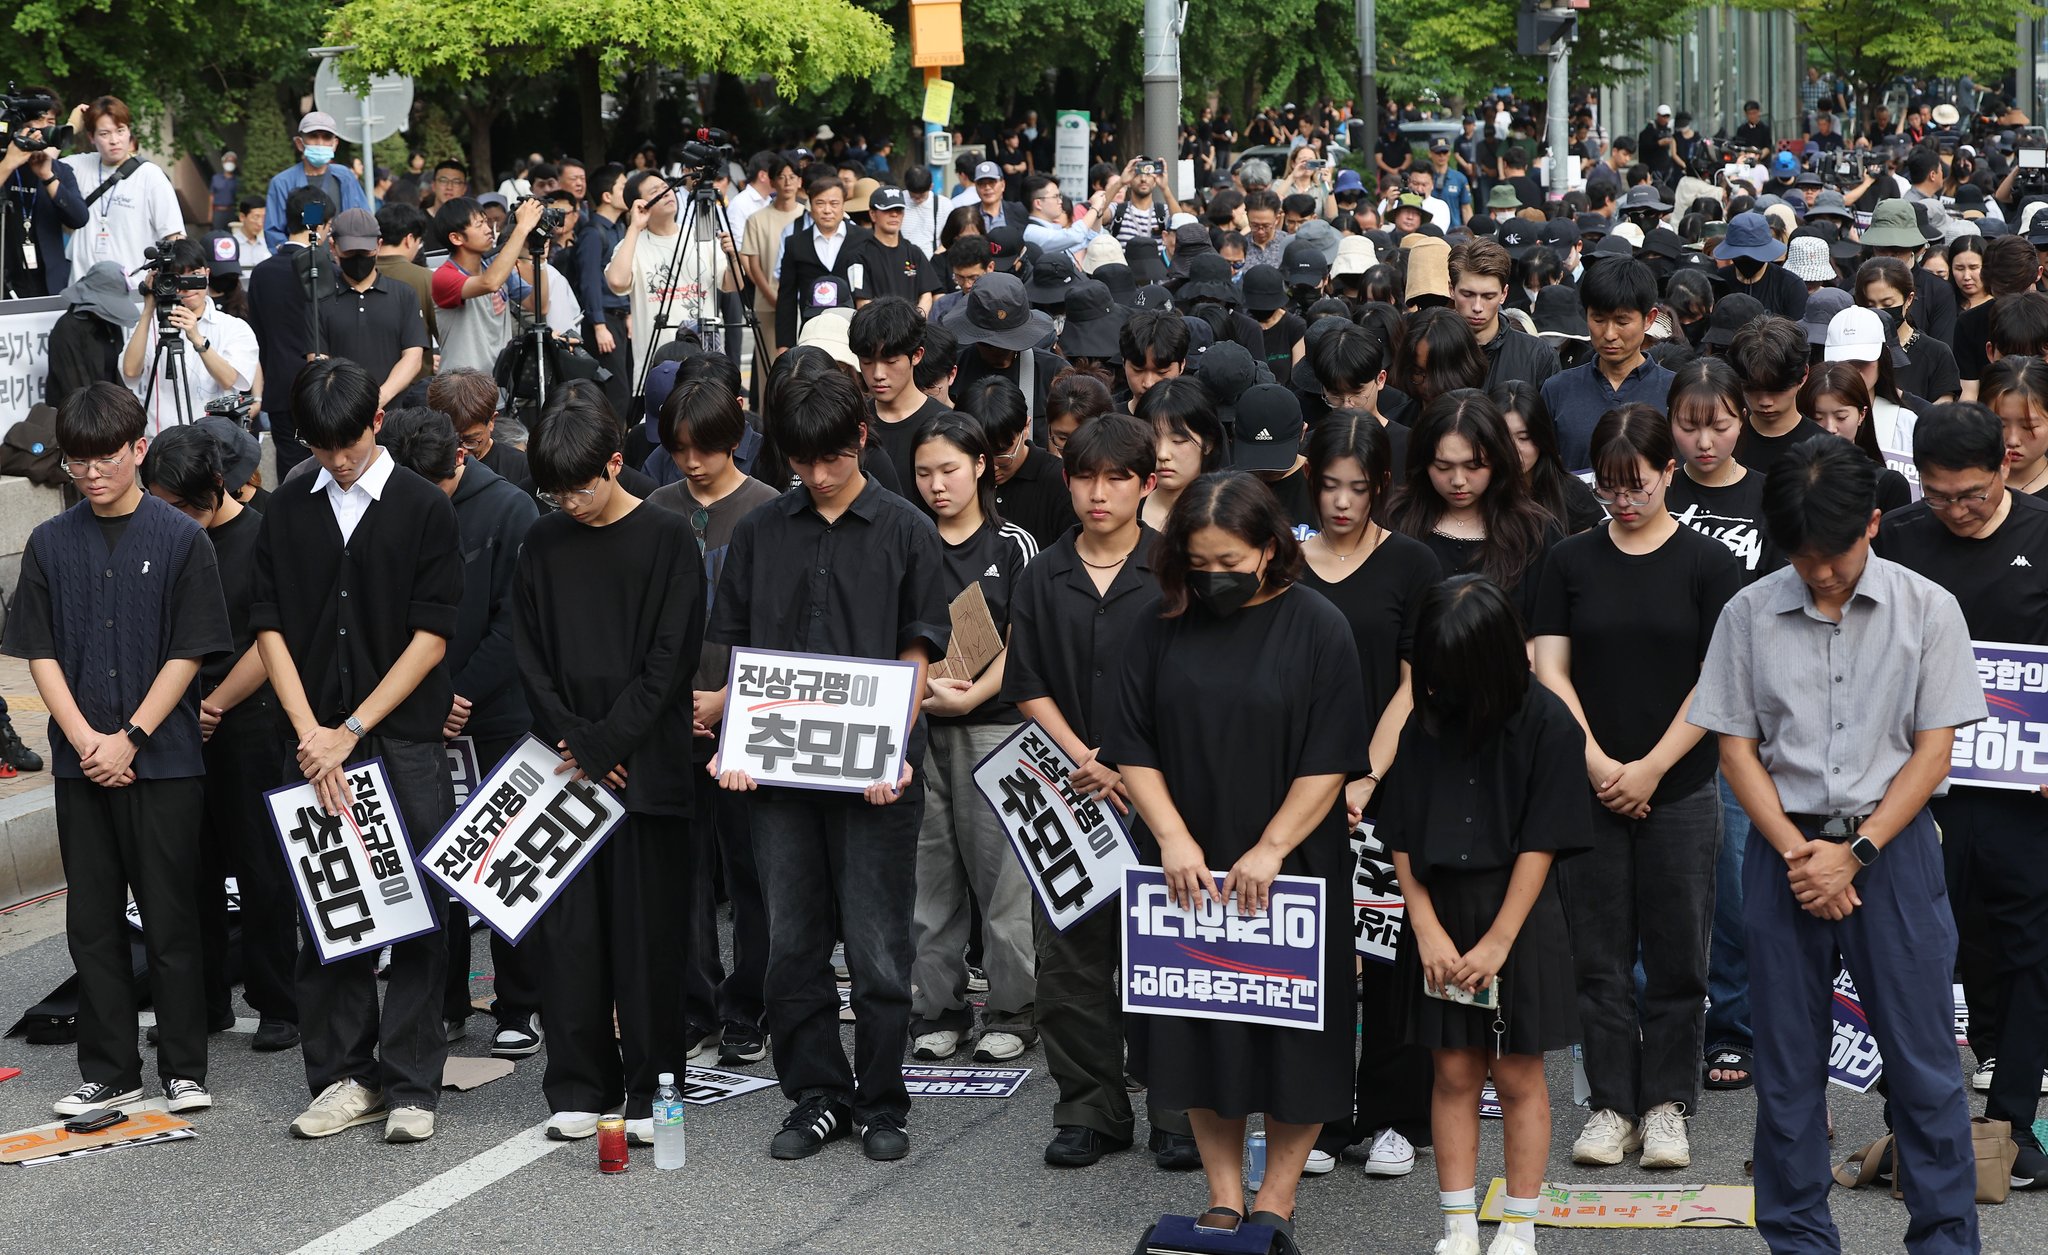  4일 오후 서울 여의도 국회 앞에서 열린 추모 집회에서 참가자들이 고인을 추모하며 묵념하고 있다. 연합뉴스